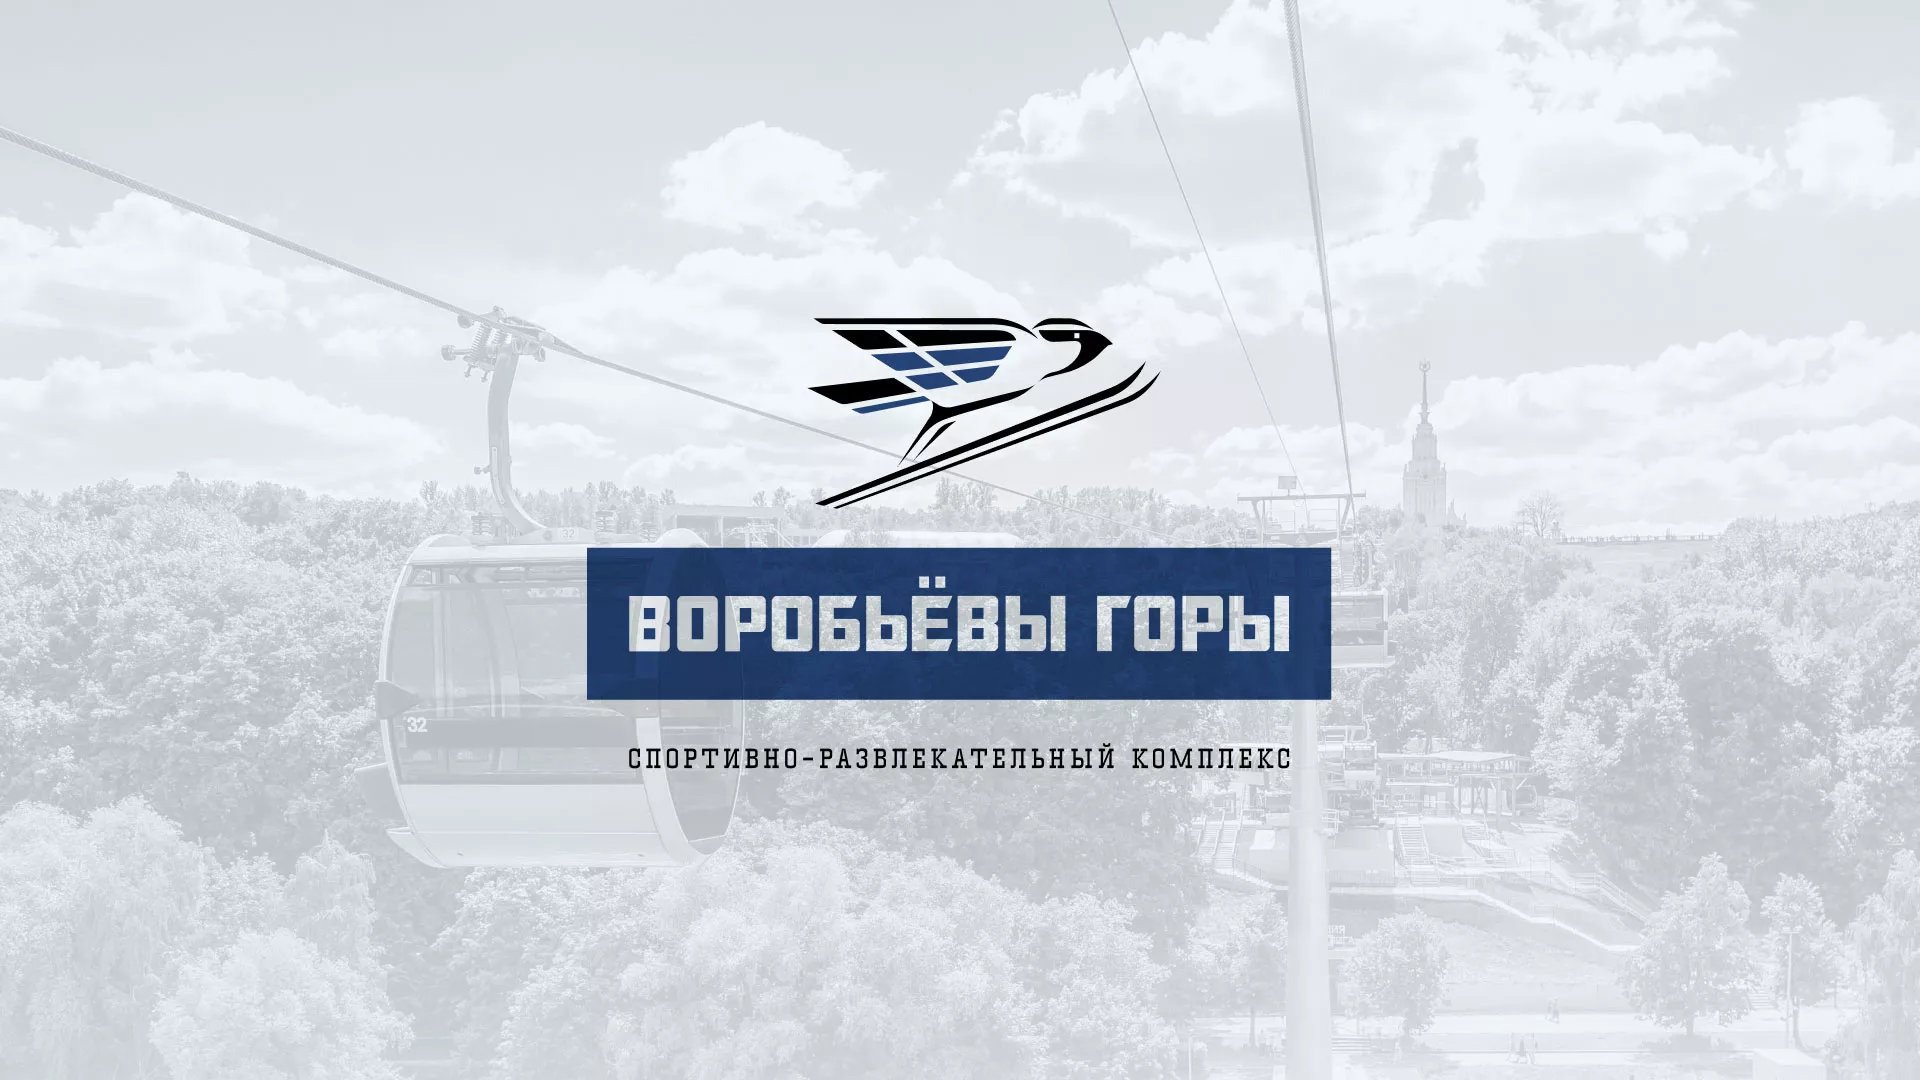 Разработка сайта в Иркутске для спортивно-развлекательного комплекса «Воробьёвы горы»